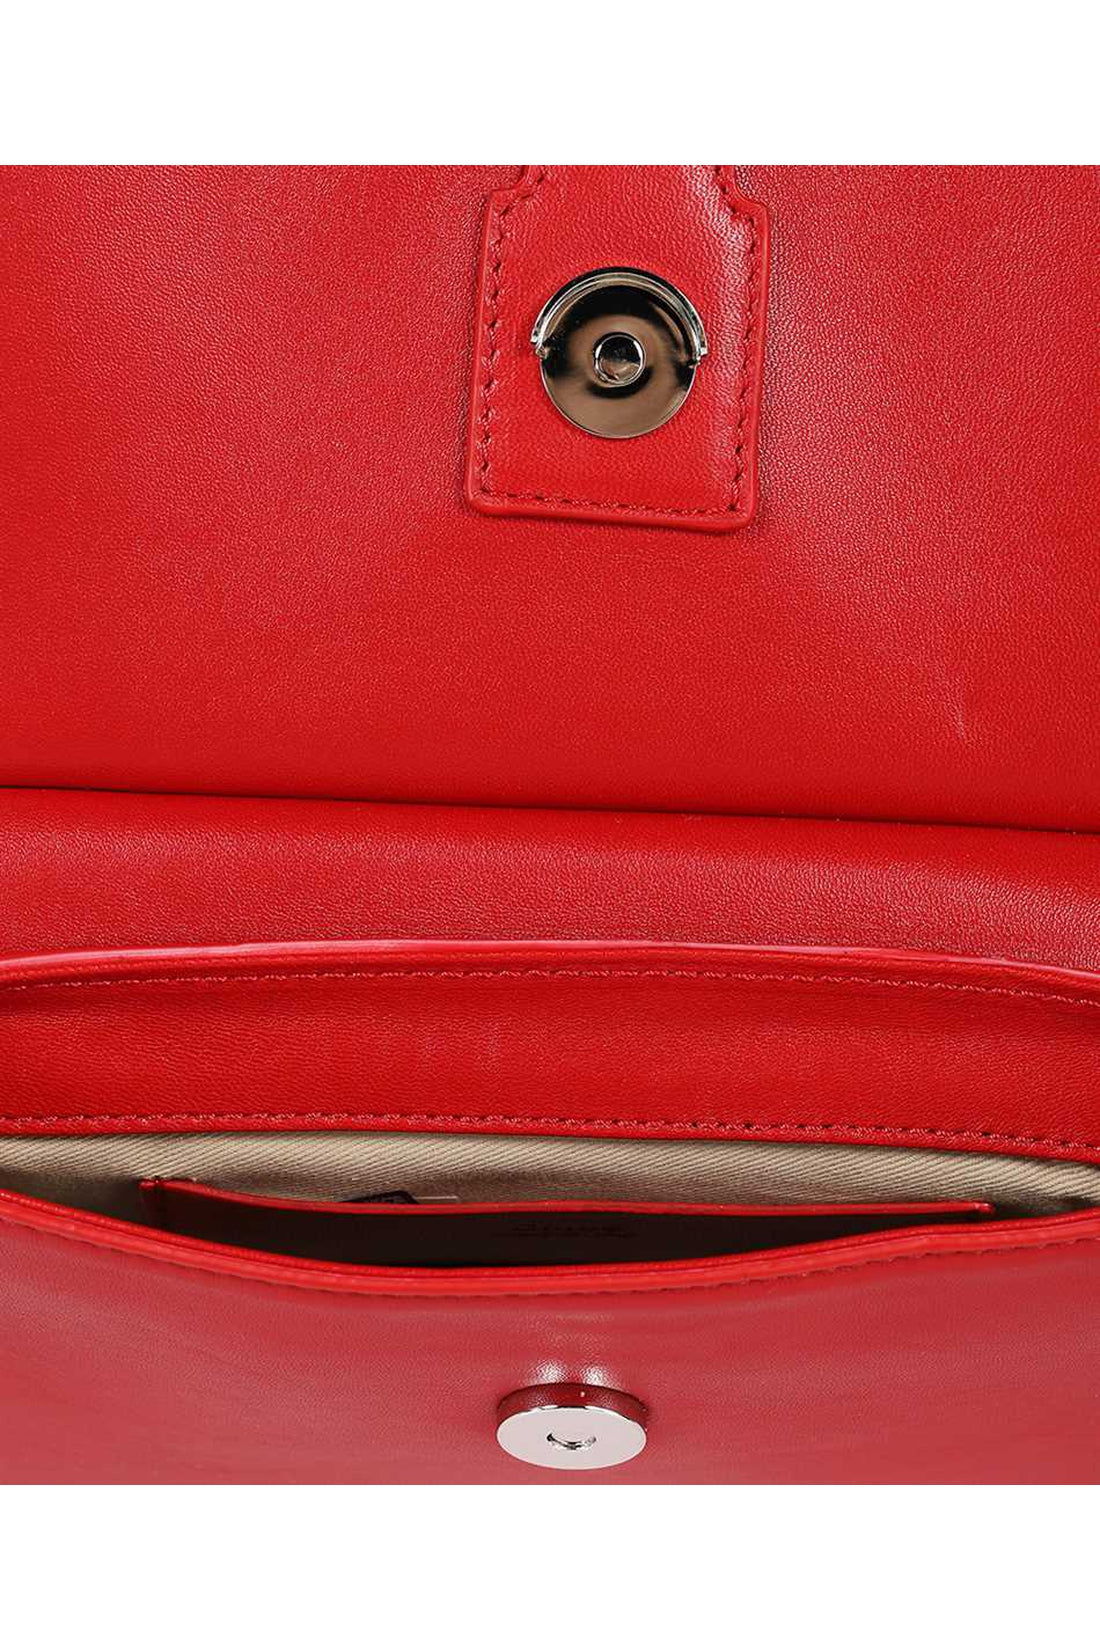 Chloé-OUTLET-SALE-Leather handbag-ARCHIVIST